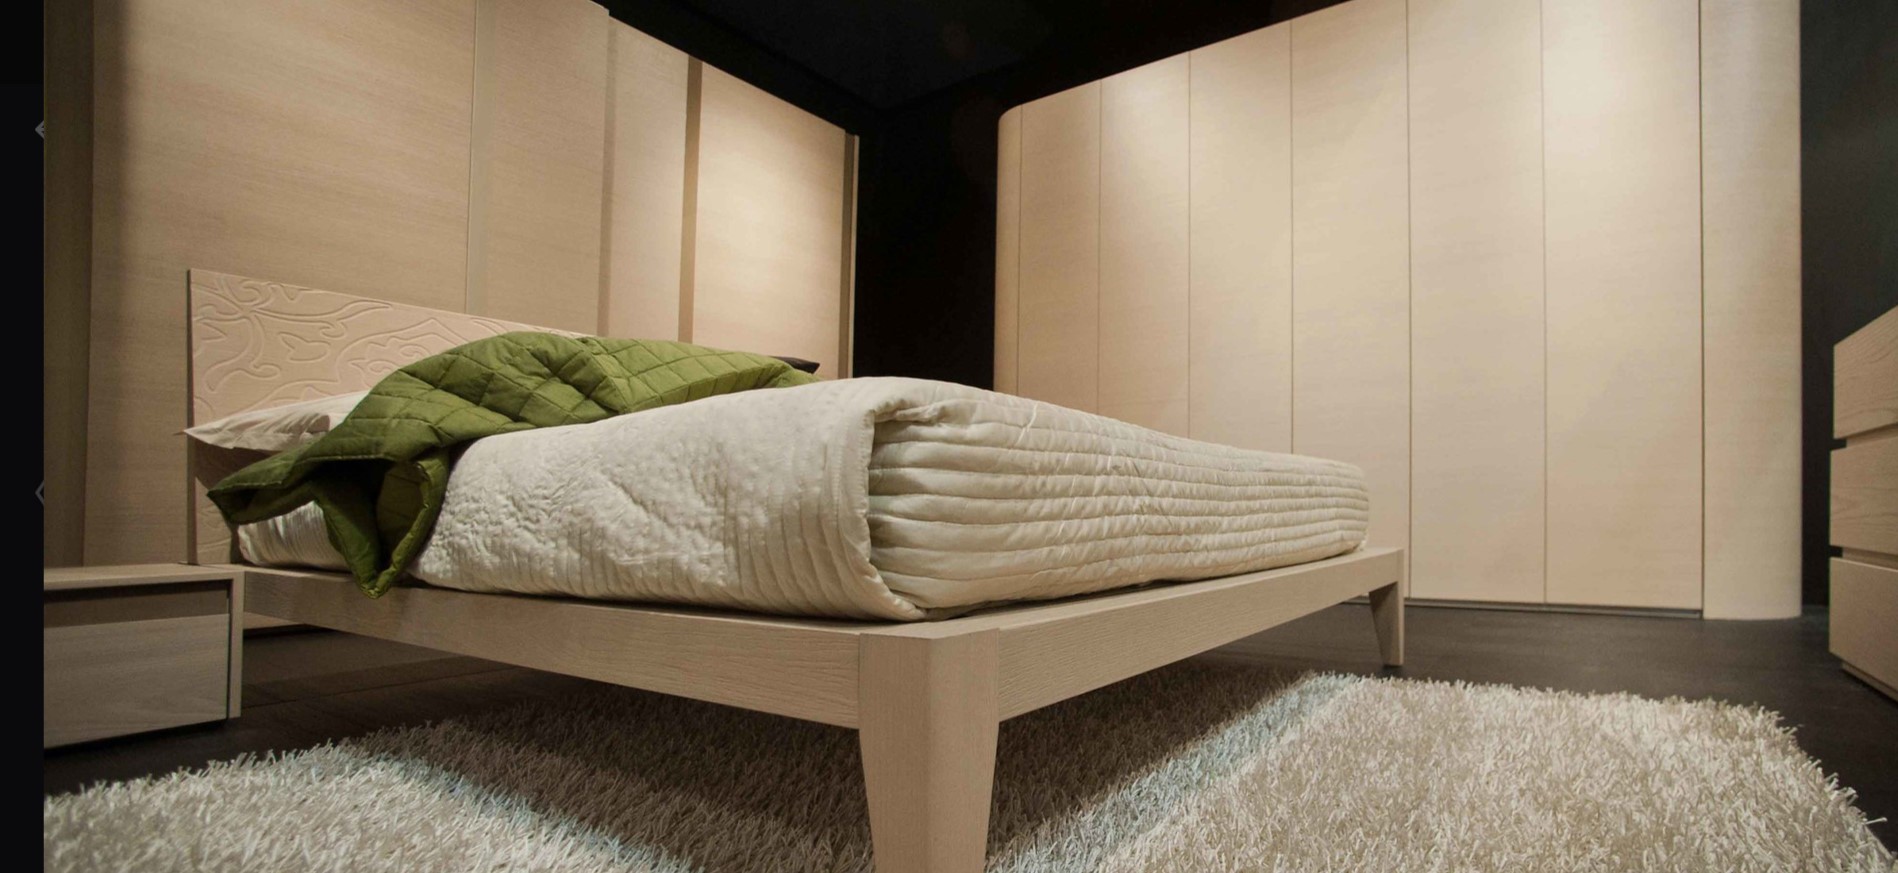 Кровать отлично сочетается со шкафом и тумбой в спальне